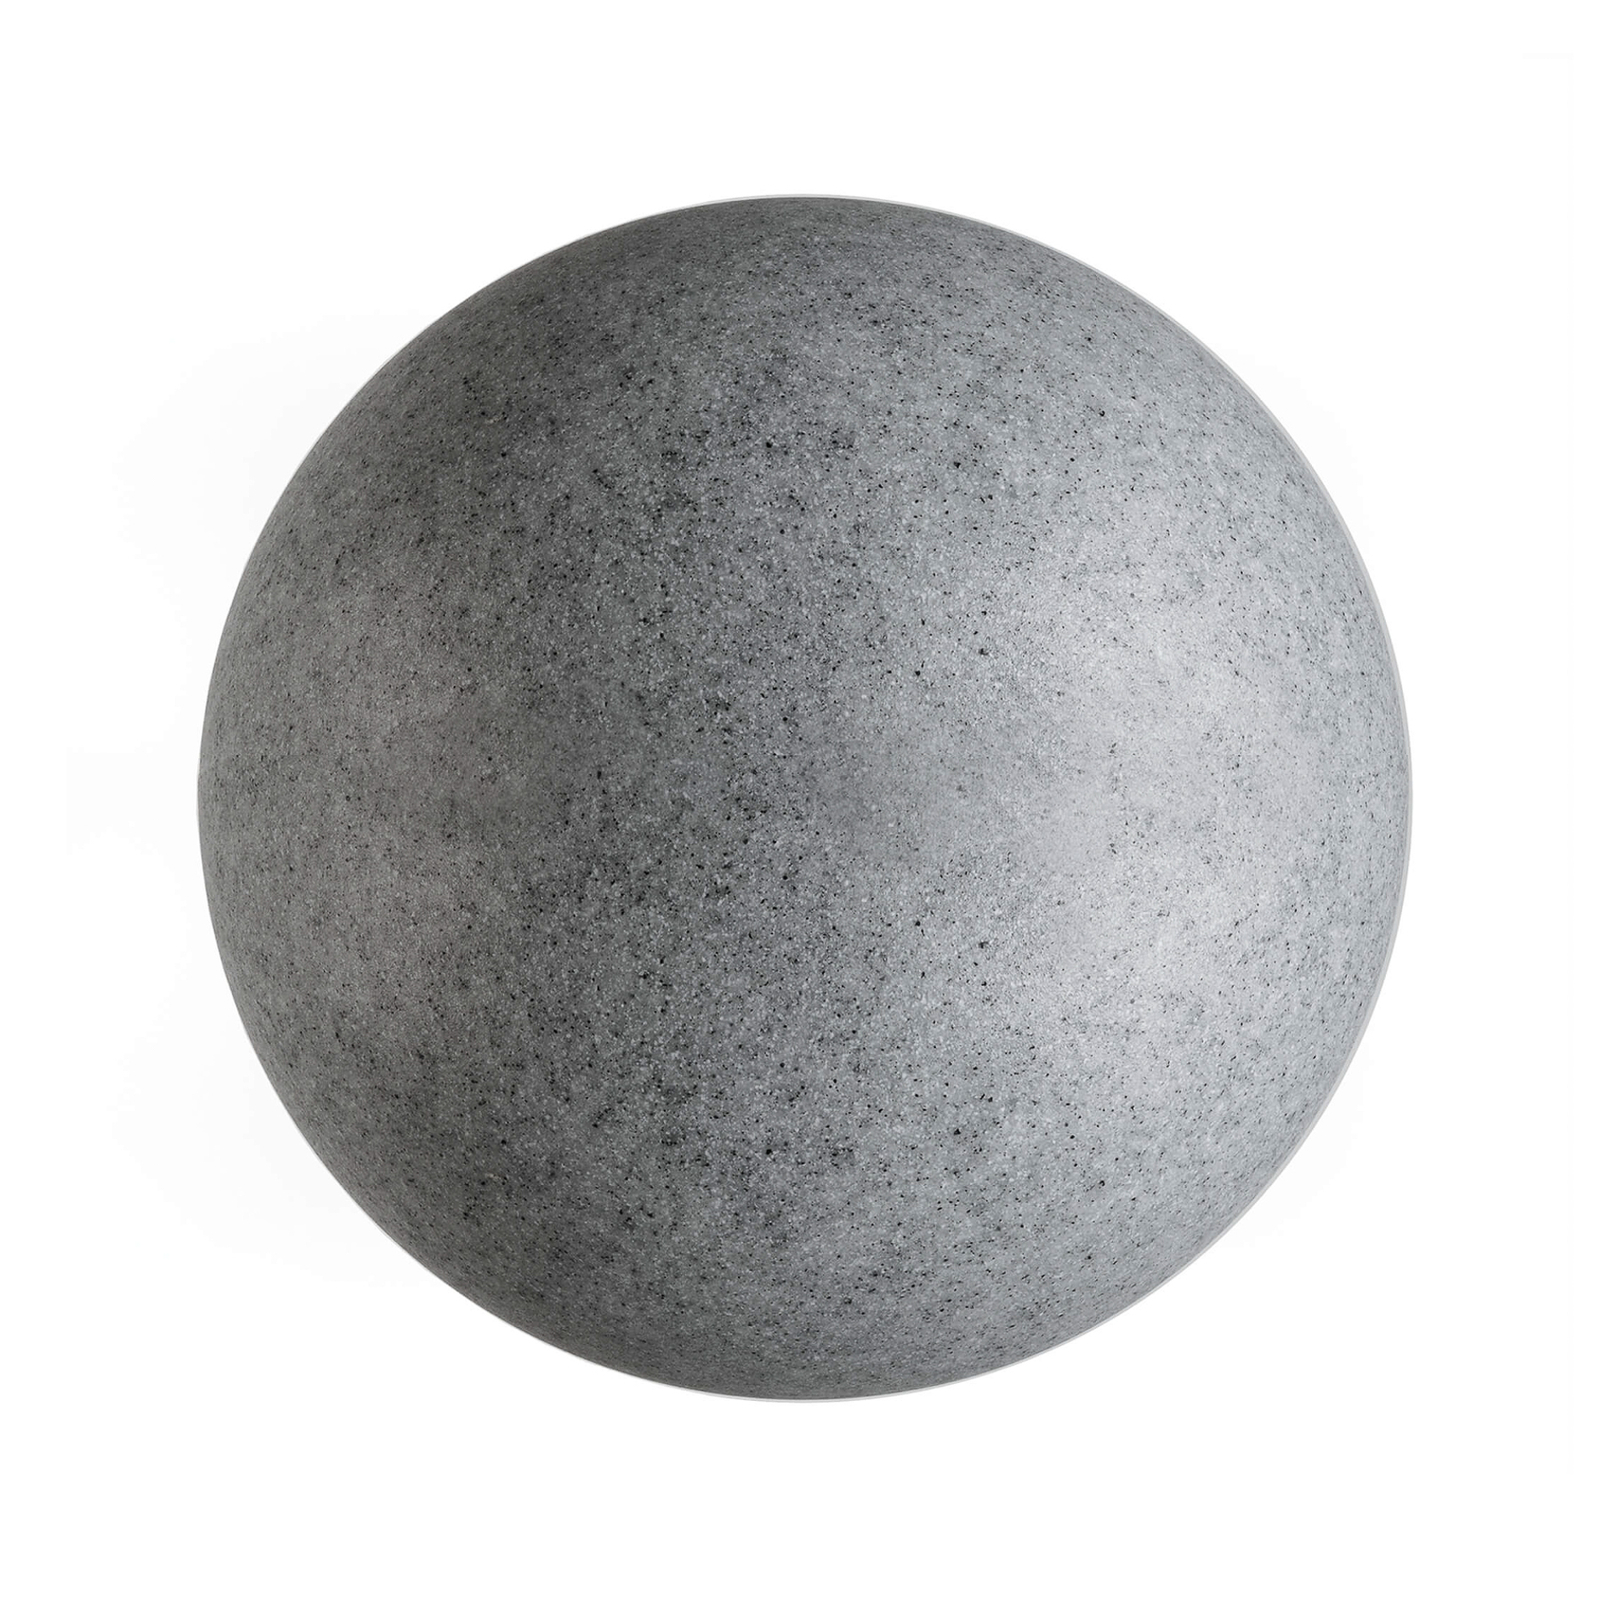 Buiten-bollamp met grondspies, graniet, Ø 45cm